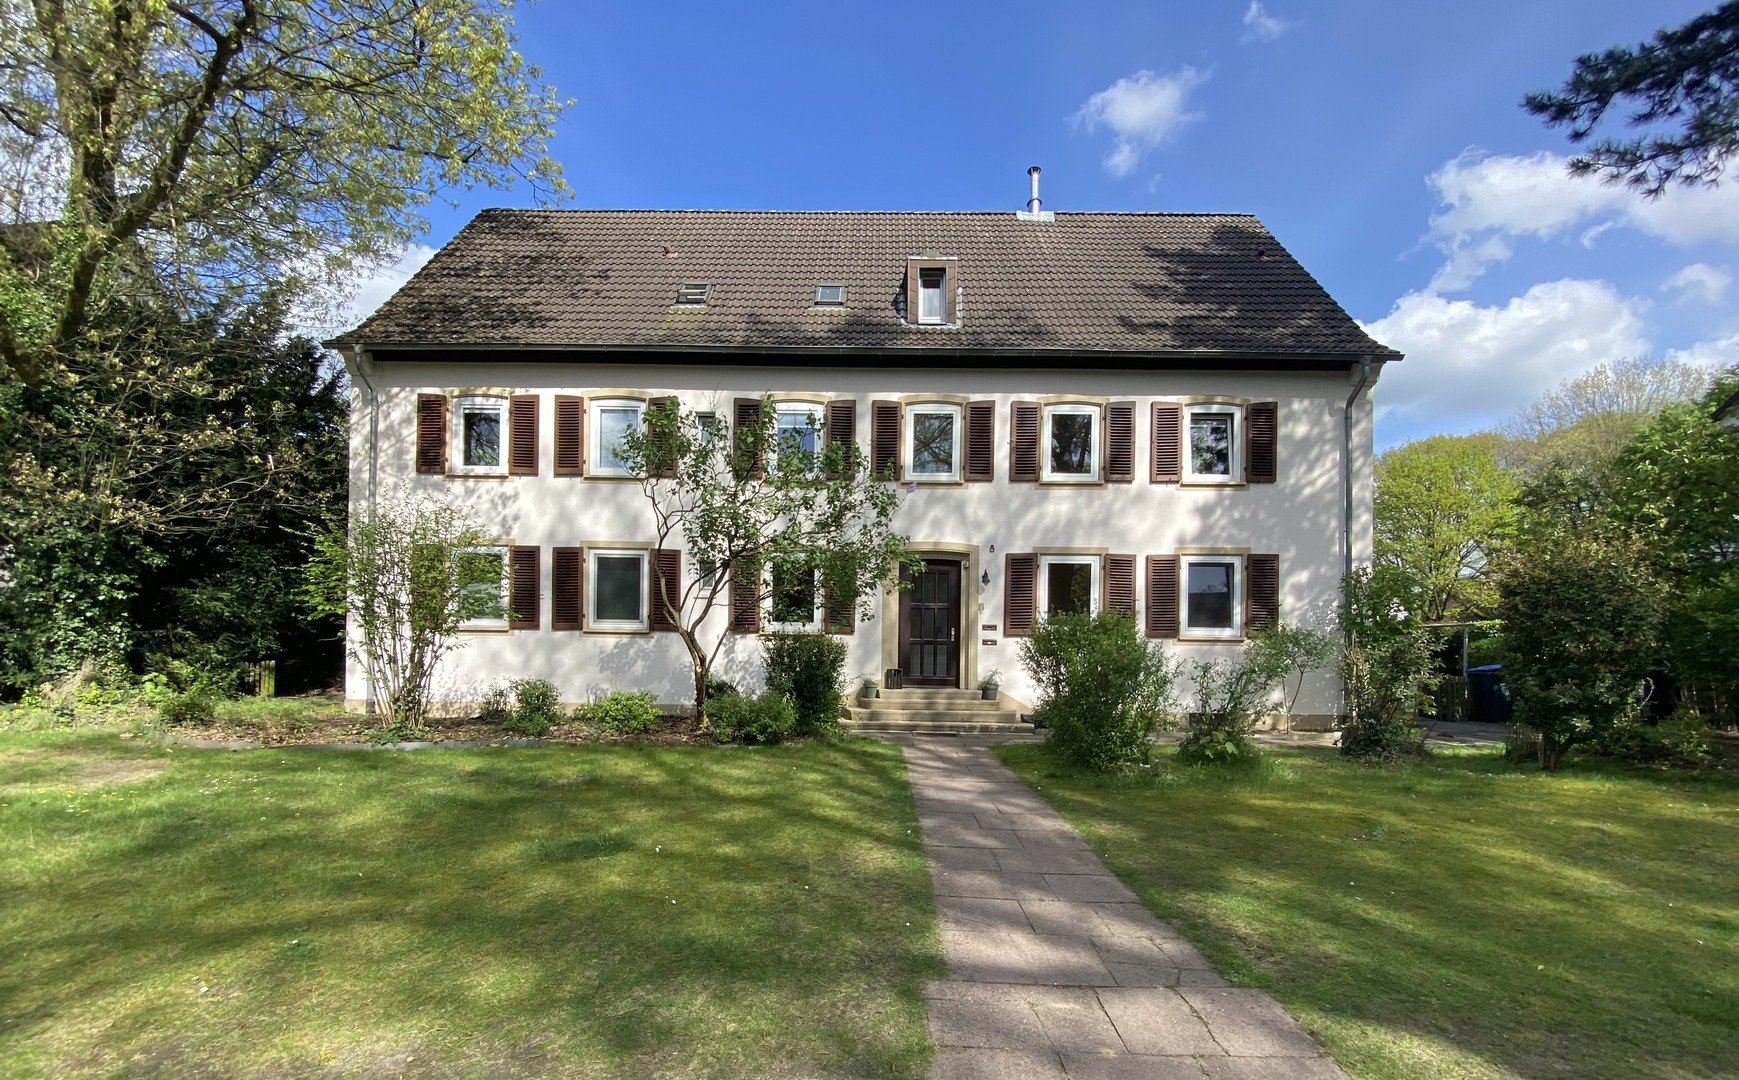 Großzügige, modernisierte Wohnung mit Garten und Mansarde in historischem Stuttgarter Stil